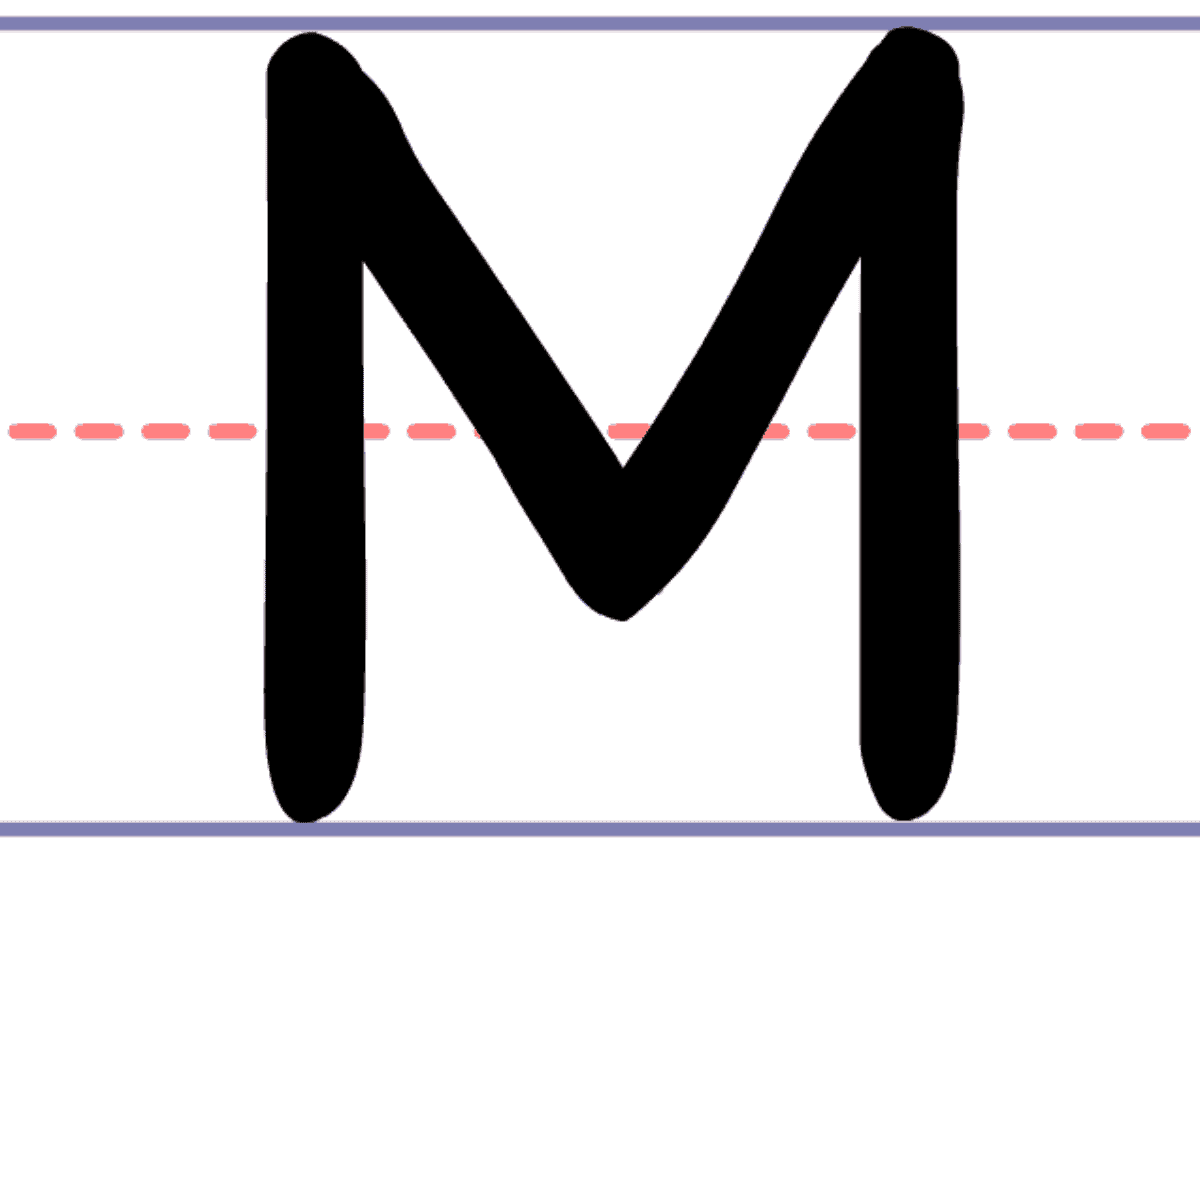 cursive uppercase m